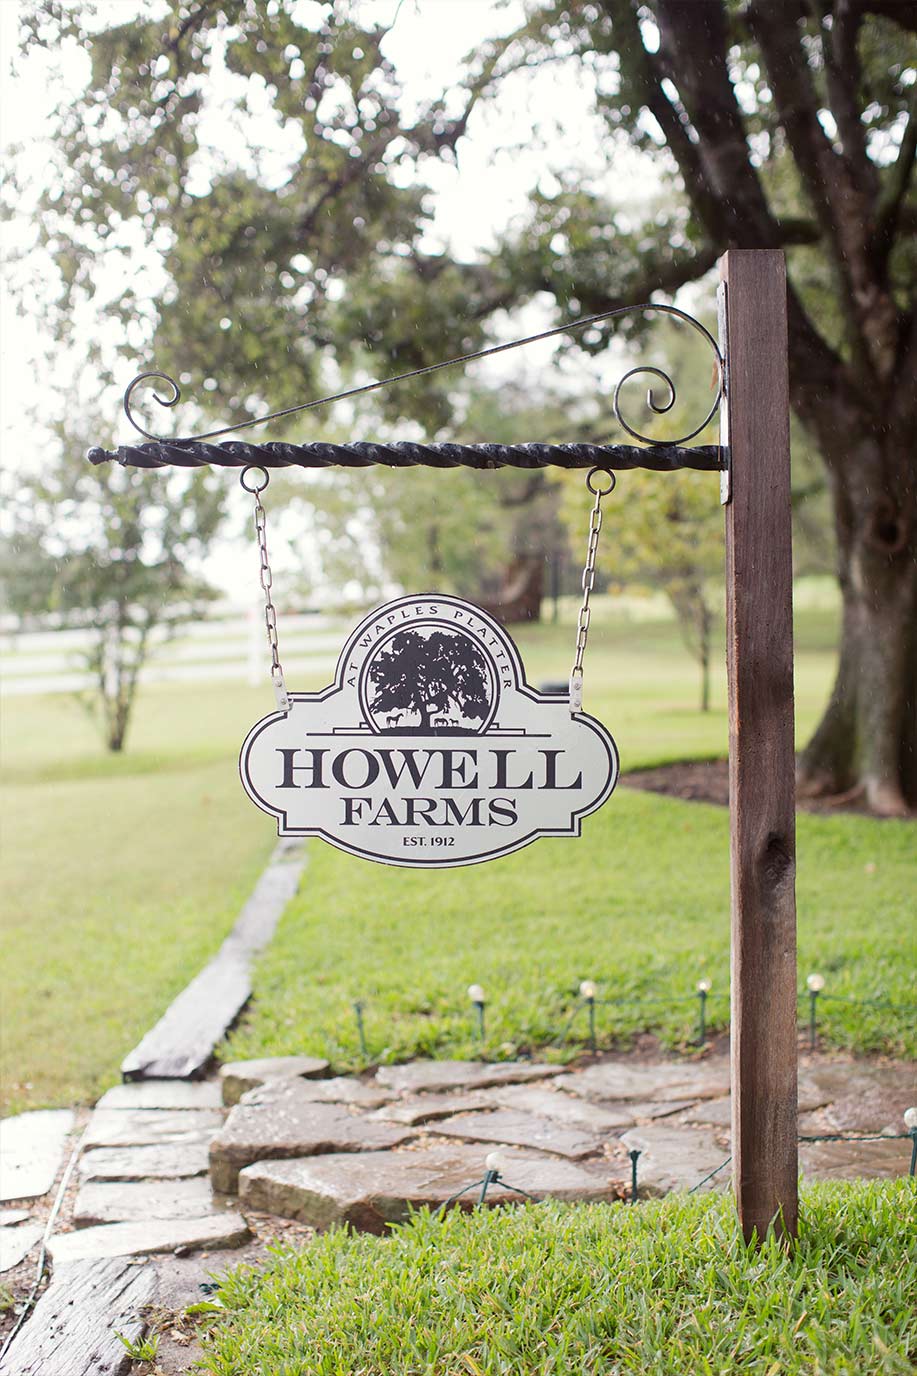 Howell Family Farms Arlington Wedding Venue